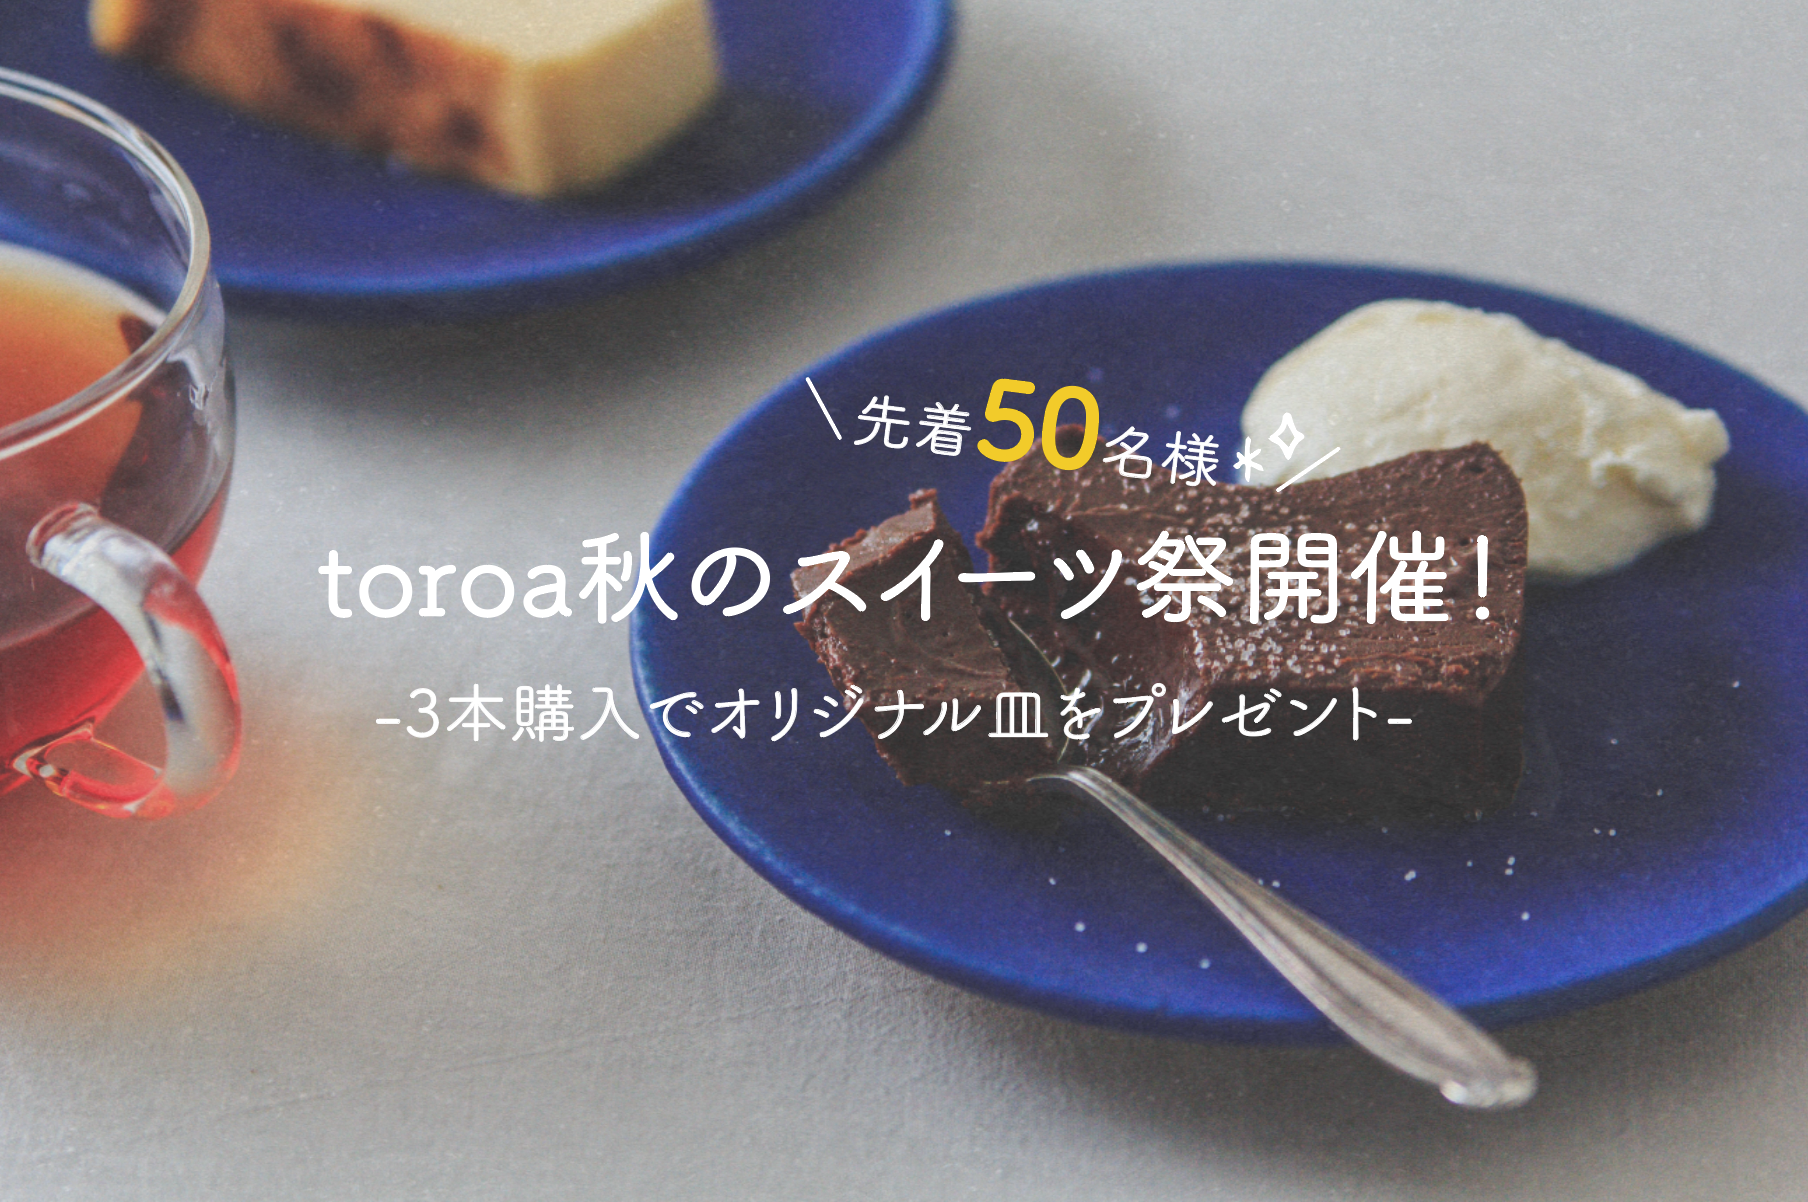 【3本購入でお皿をプレゼント】toroa 秋のスイーツ祭を開催します！※10月12日に応募締め切りました！